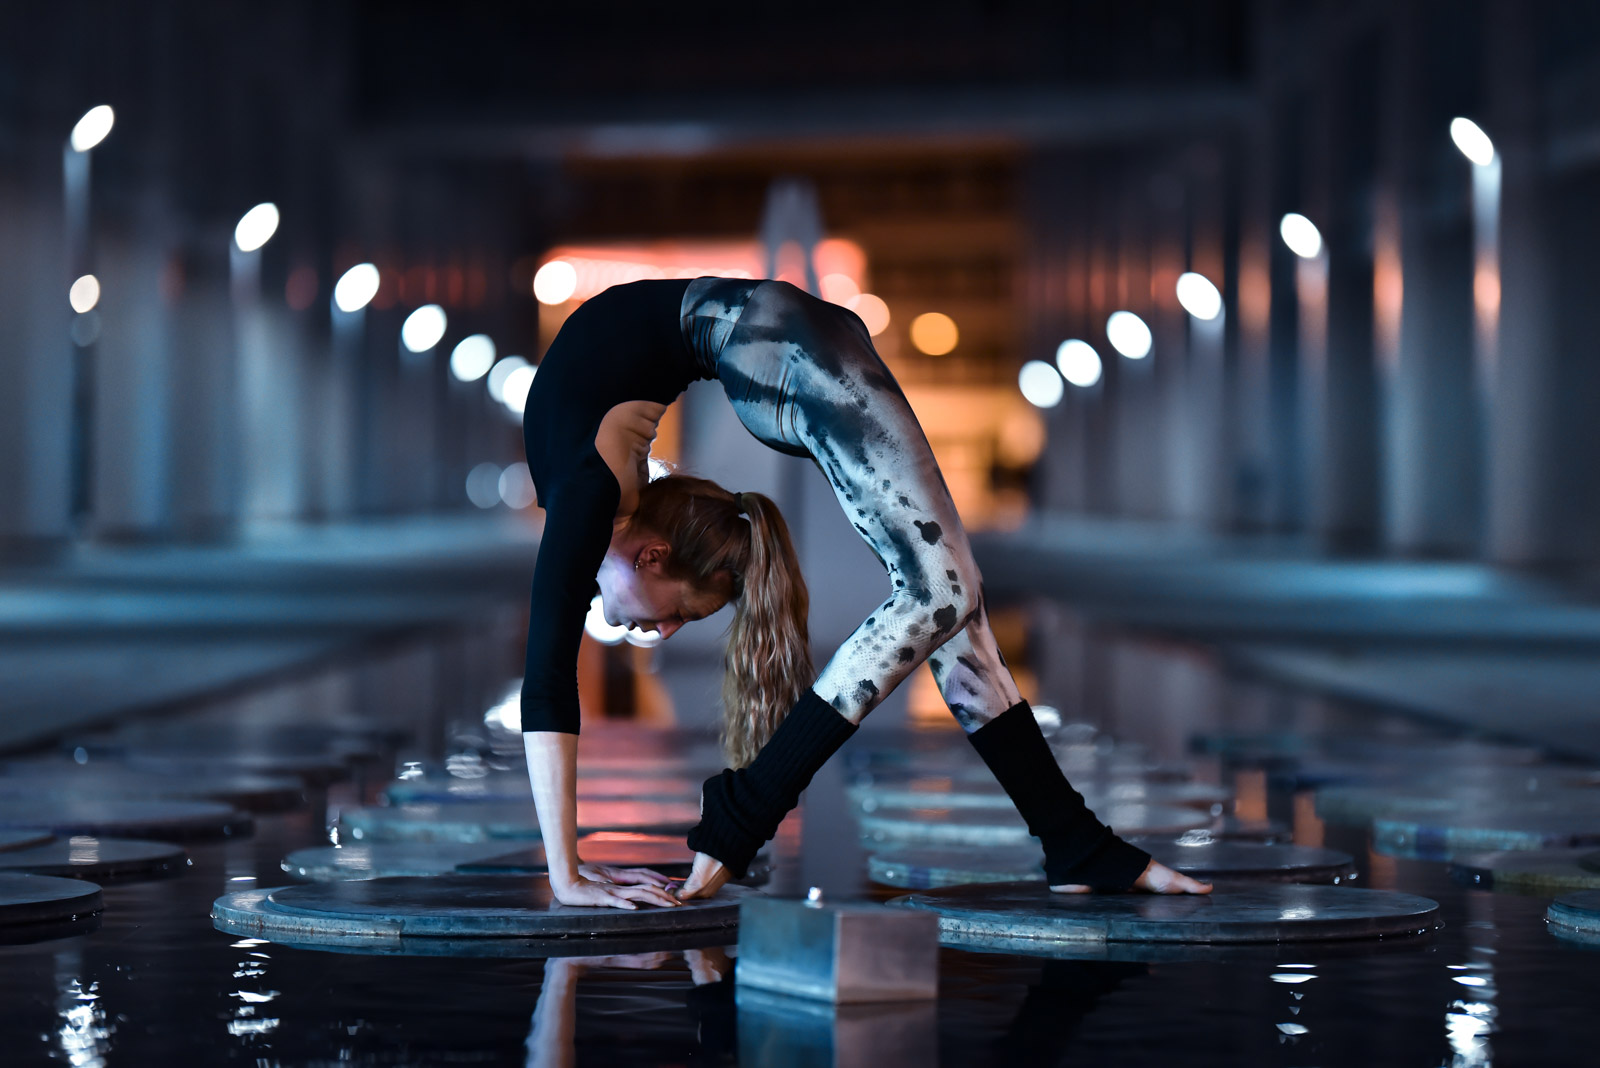 Contortion und Flexibility-Shooting: Artistin in extremer Brücke bei Nacht in der Stadt